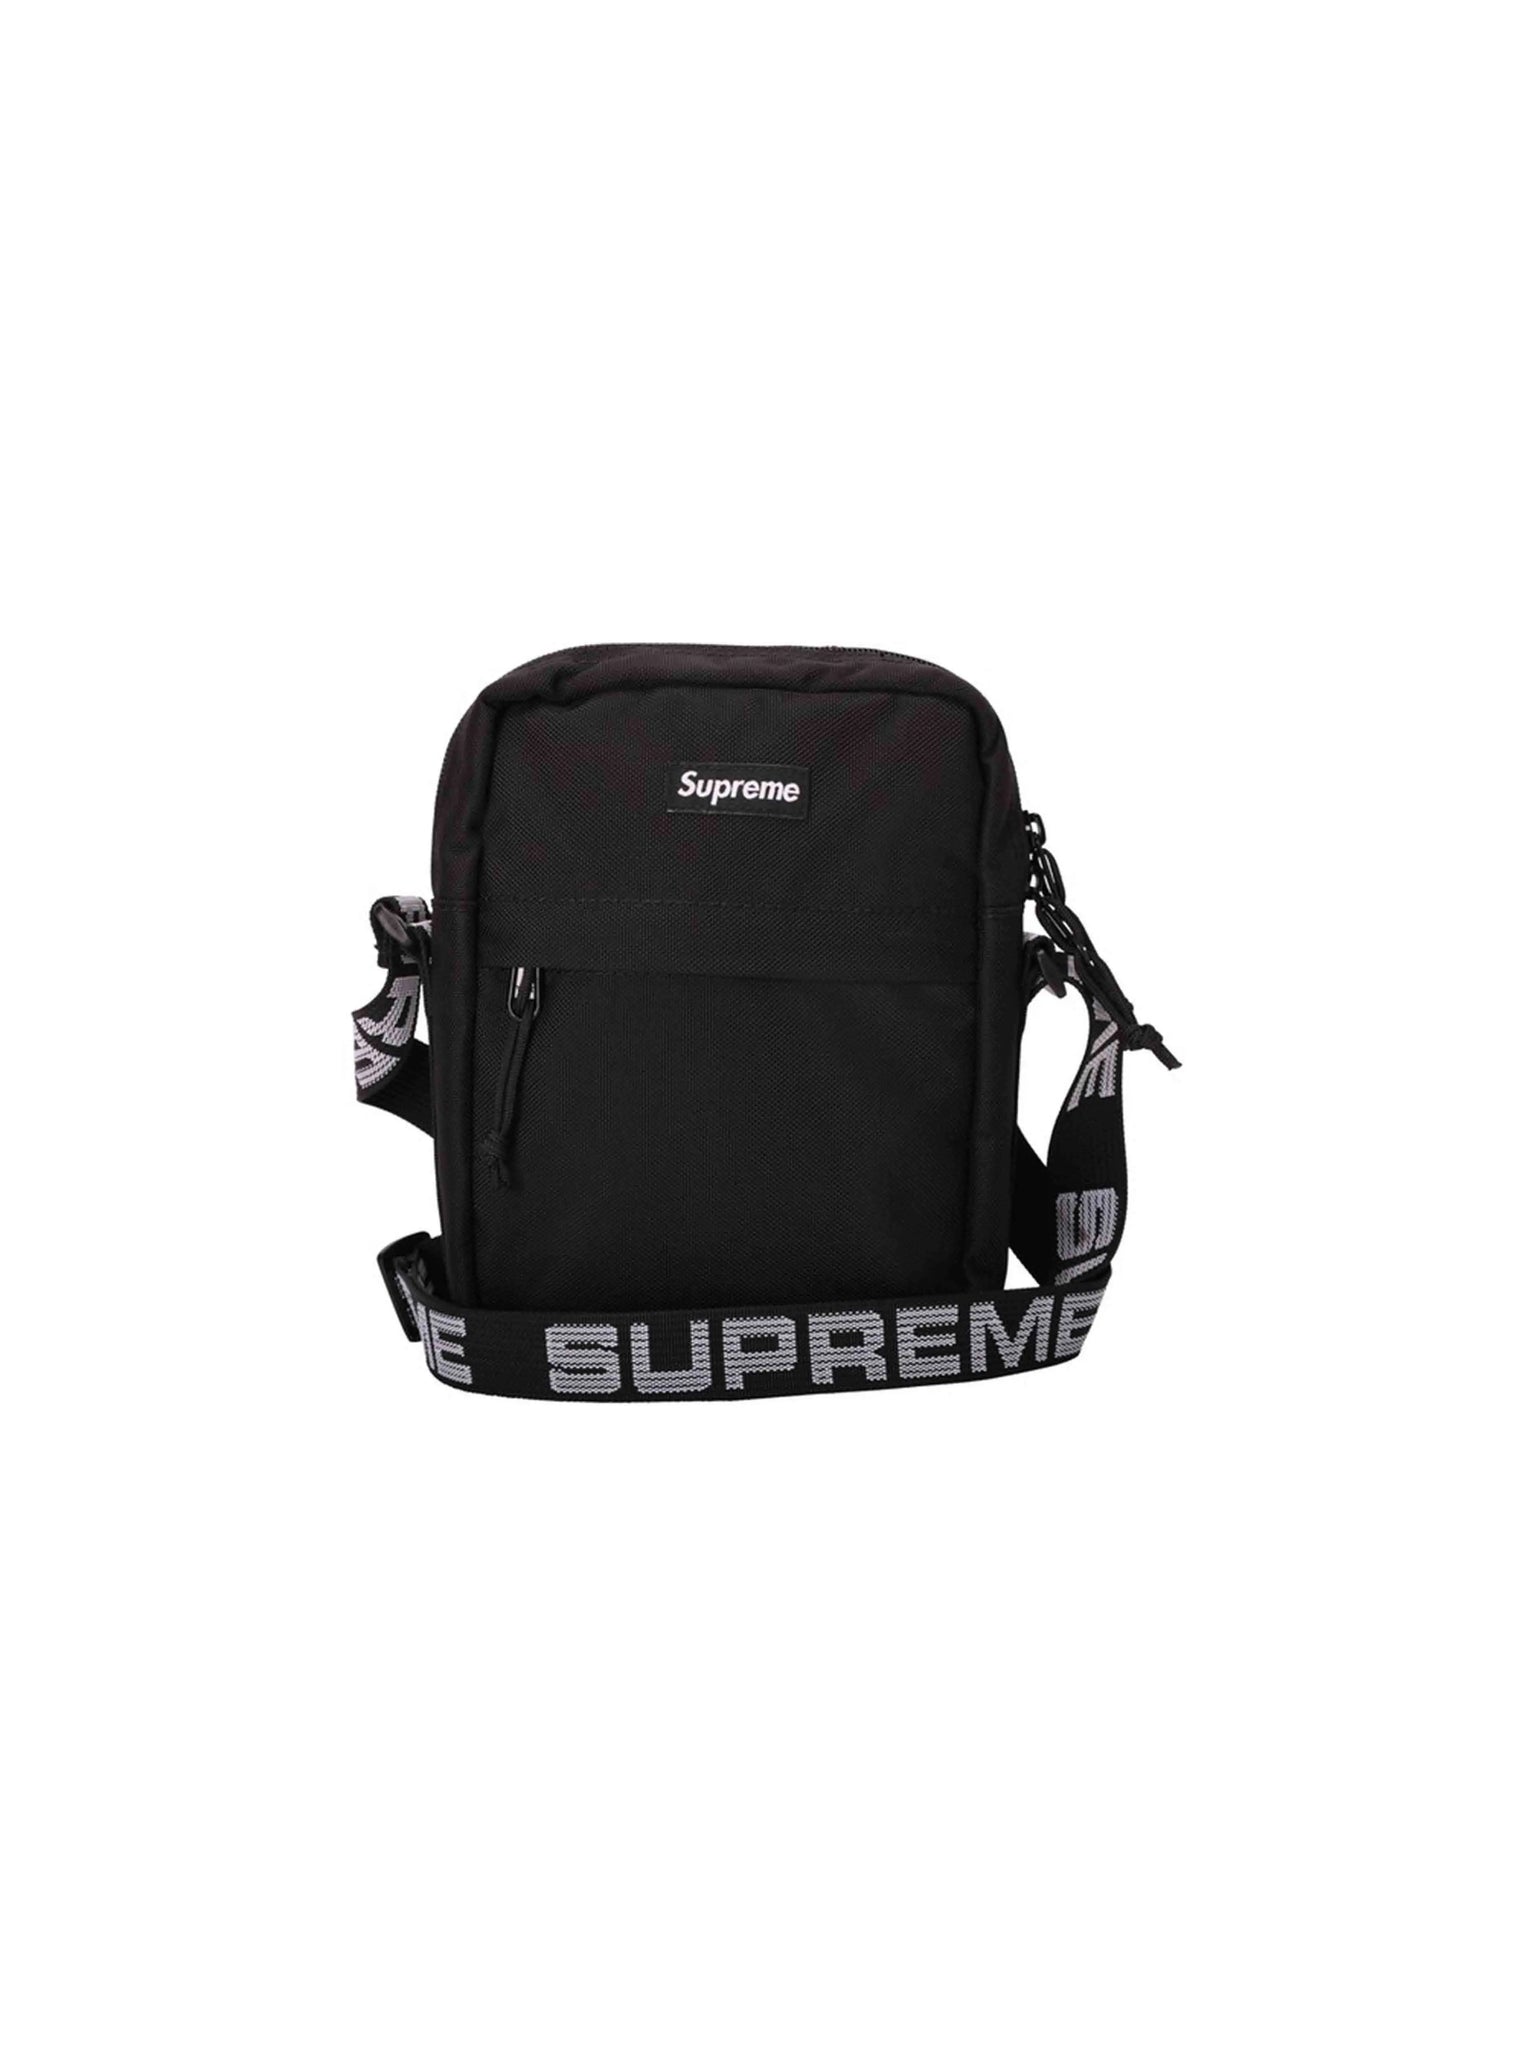 Supreme Shoulder Bag Black Supreme